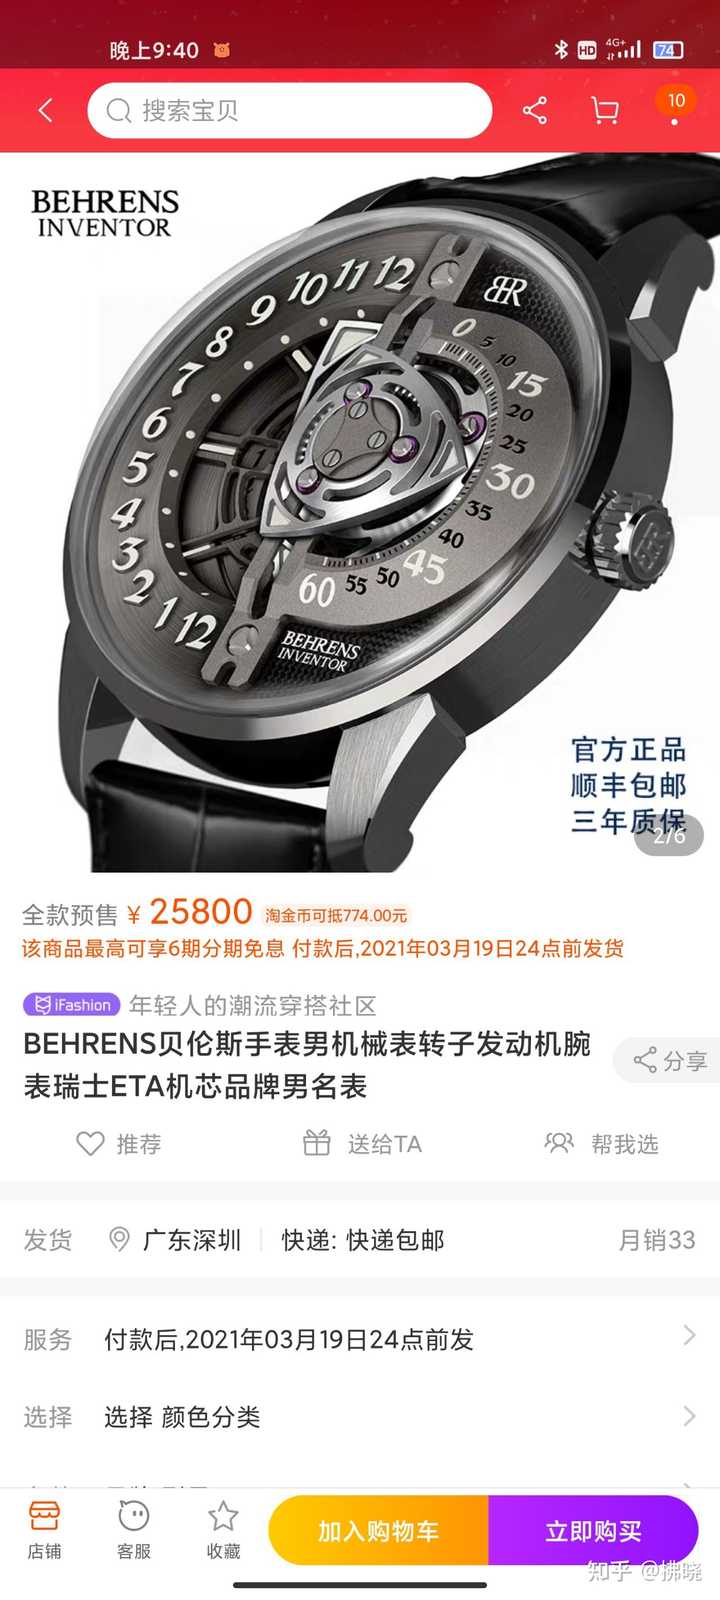 国产男士机械手表_国产机械手表品牌排行榜前十名_国产机械手表哪个牌子好